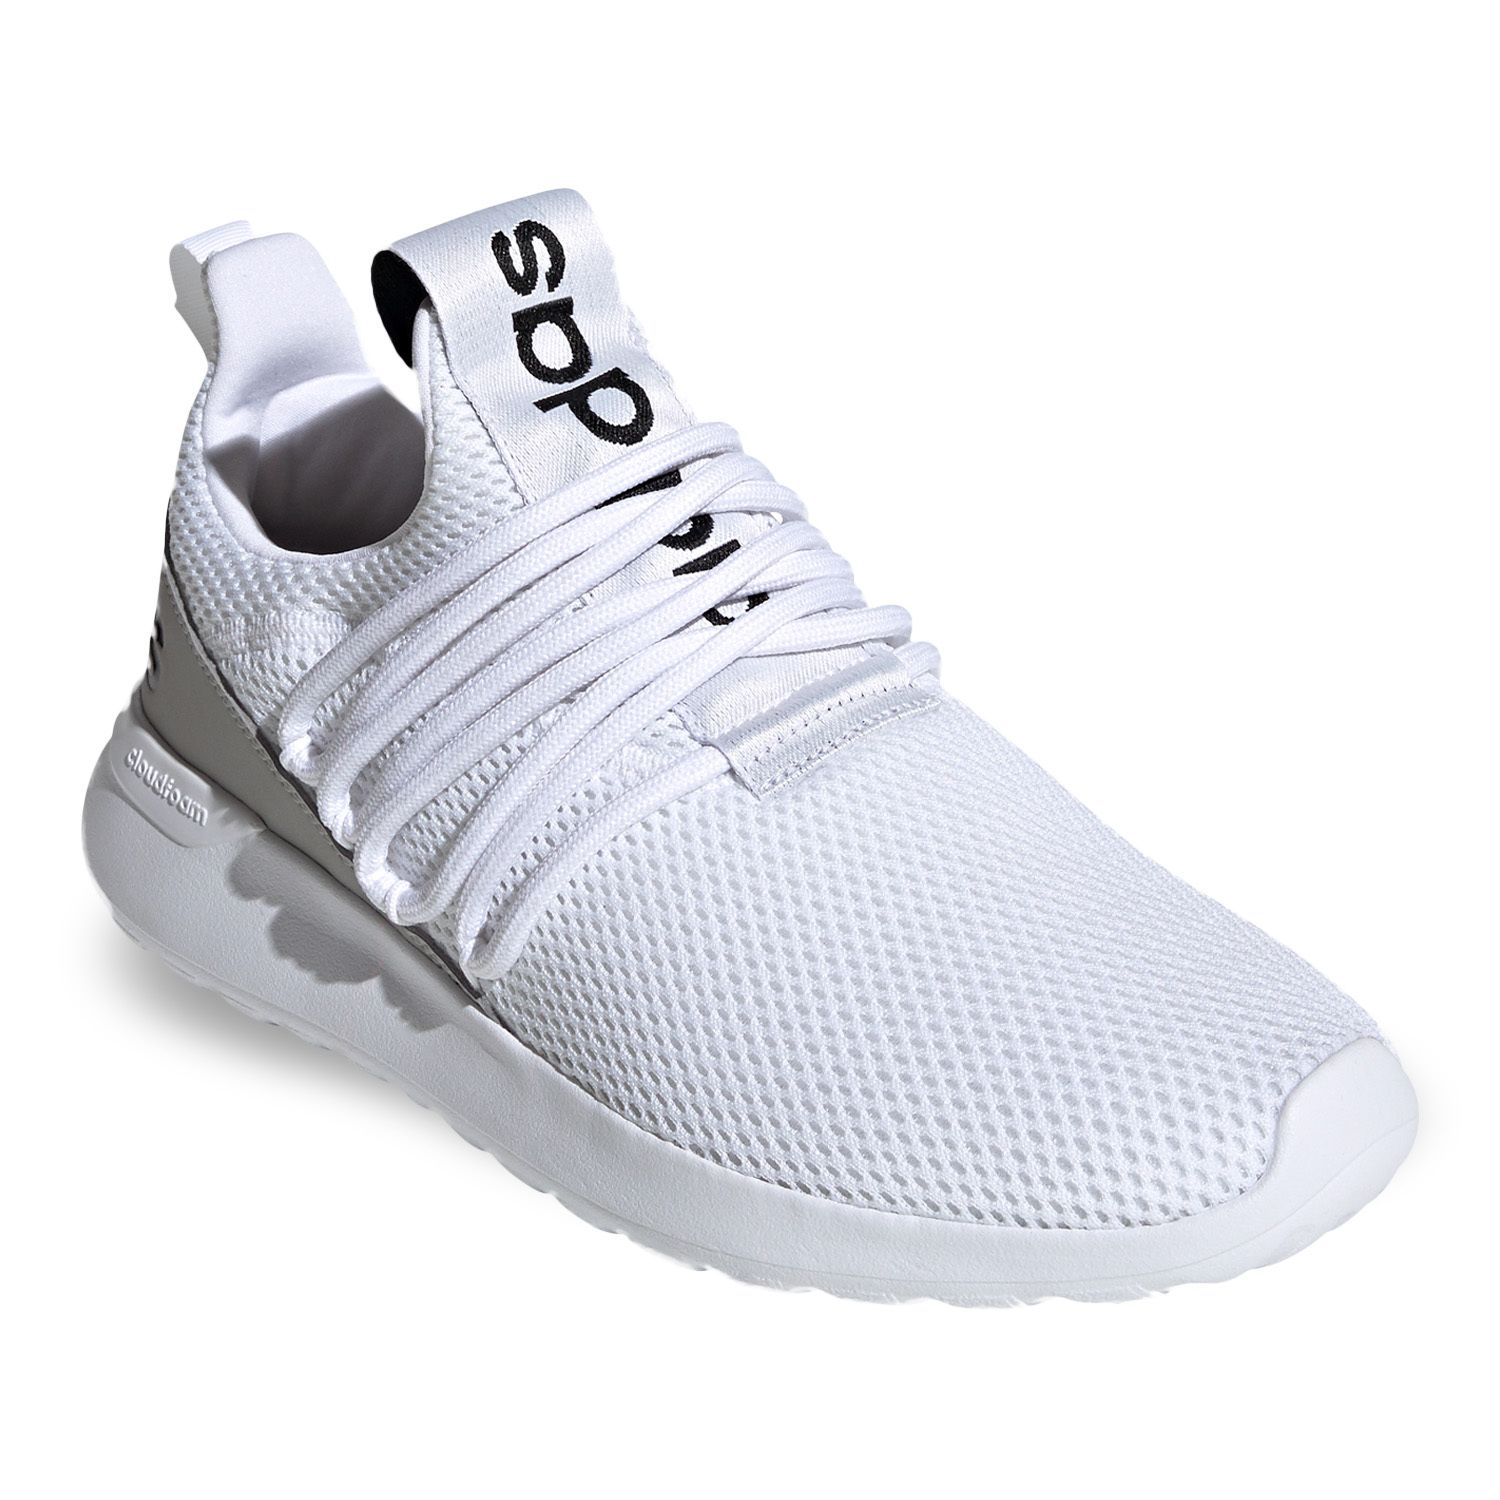 white on white adidas shoes